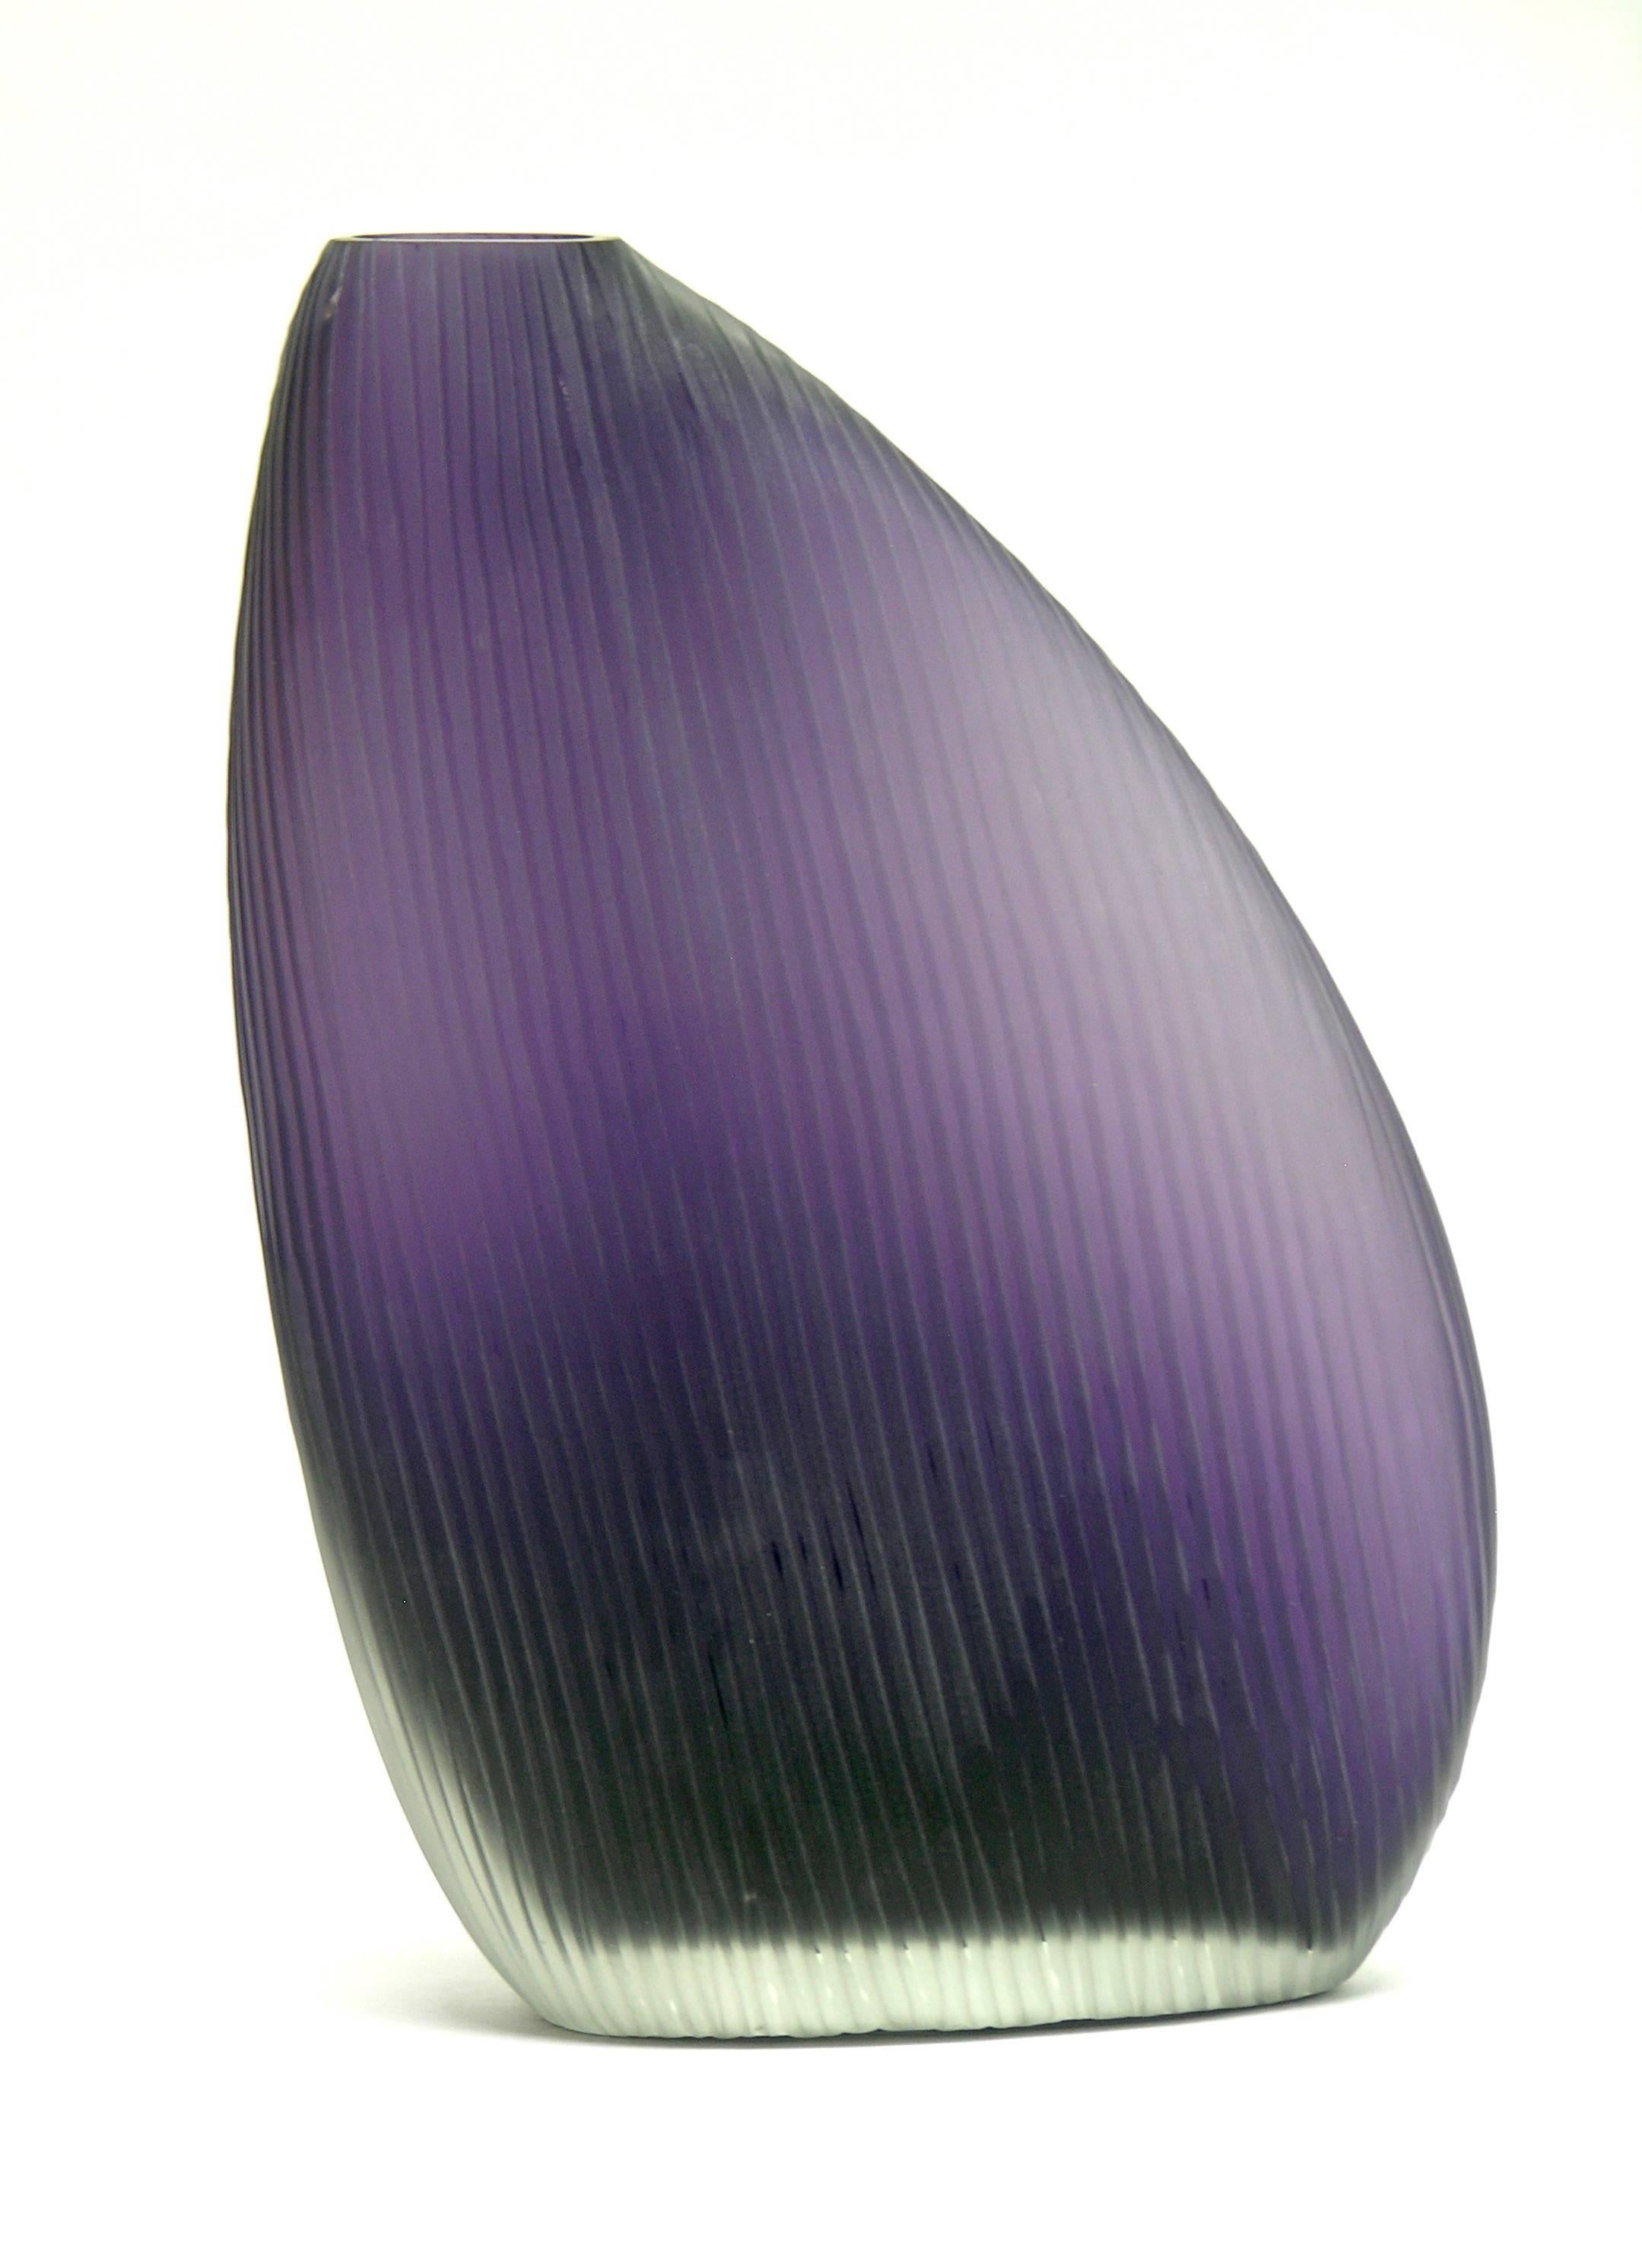 Vistosi 1970s Italian Modern Pair of Organic Purple Murano Glass Vases 3